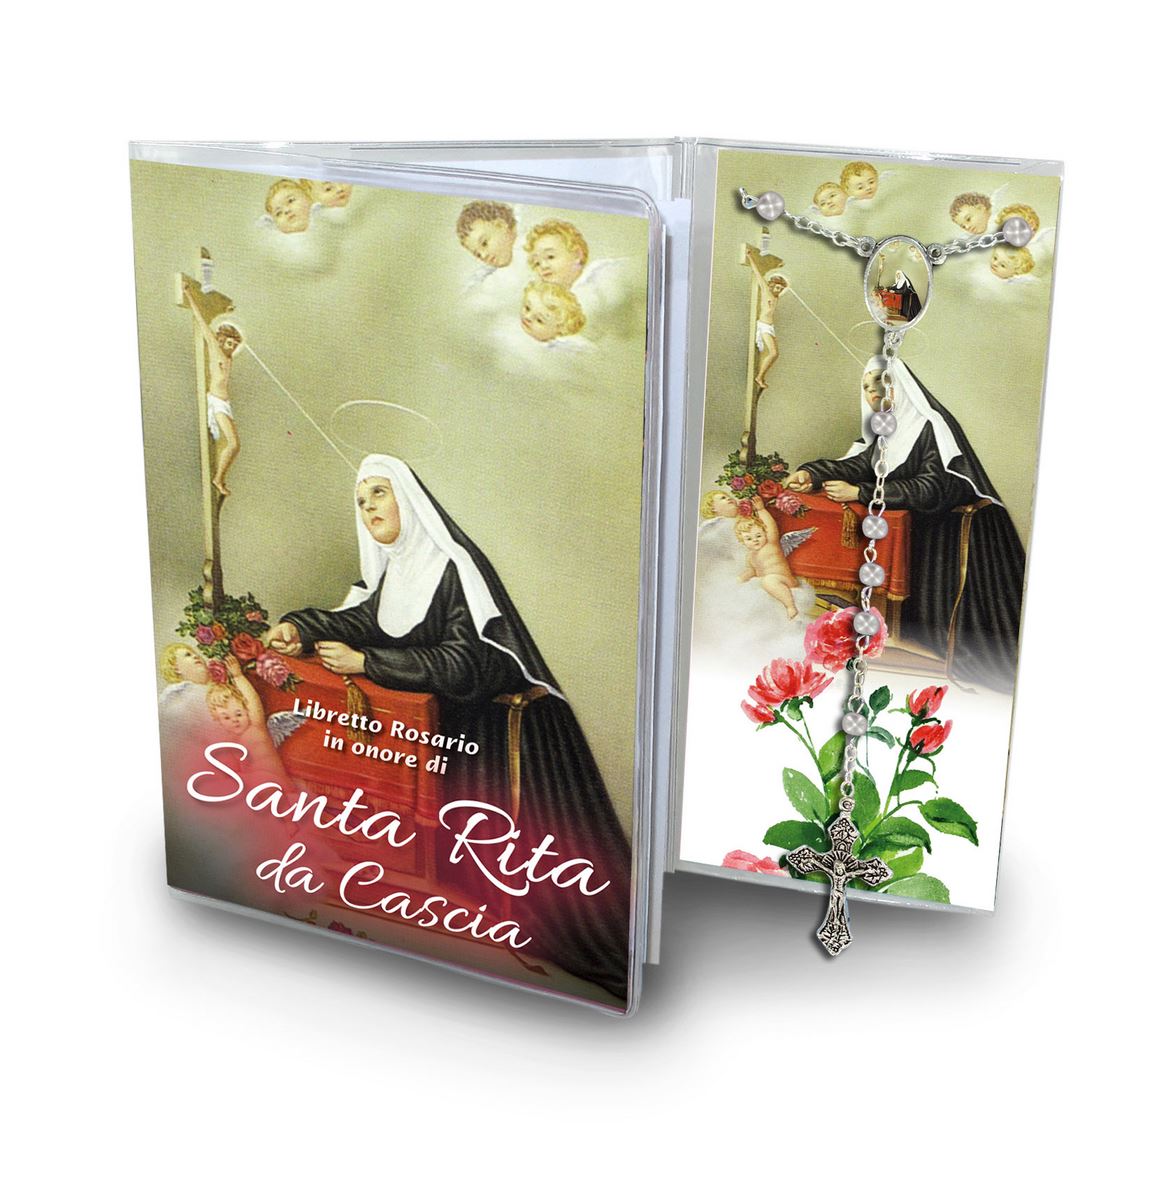 libretto con rosario santa rita (barona milano) - italiano